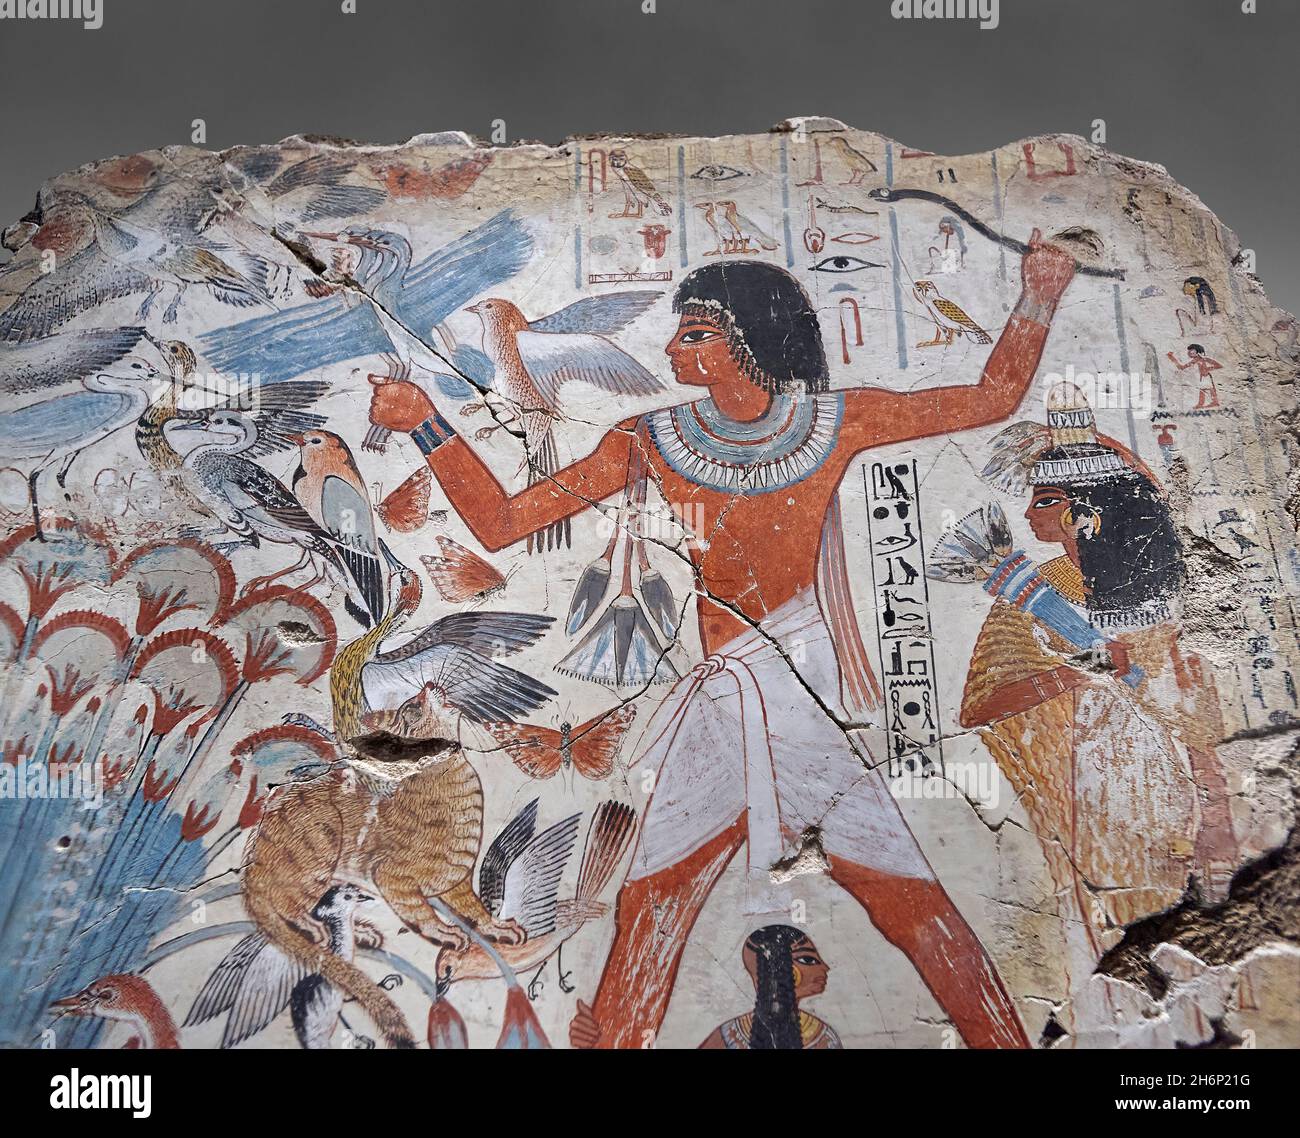 Tableau de la tombe antique d'art de mur égyptien: Chasse de Nebamun dans les marais, tombe de Nebamun Thèbes, Circa 1350BC, dynastie 18e.British Museum EA37977. Banque D'Images